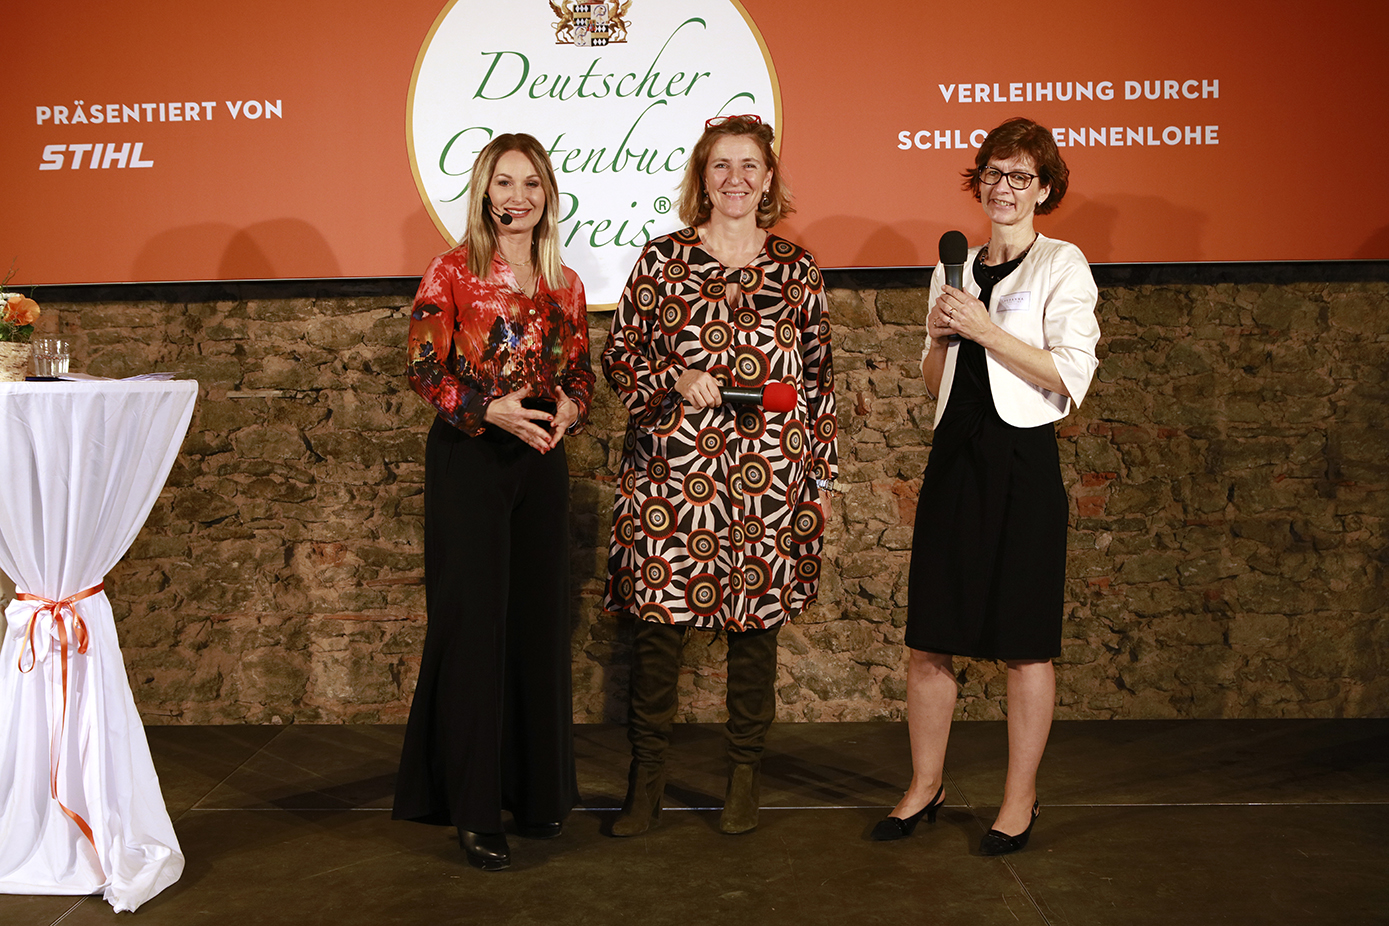 Deutscher Gartenbuchpreis:Moderatorin Eva Grünbauer (links) und Baronin Sabine von Süßkind (Mitte) Susanna Cznottka (rechts)